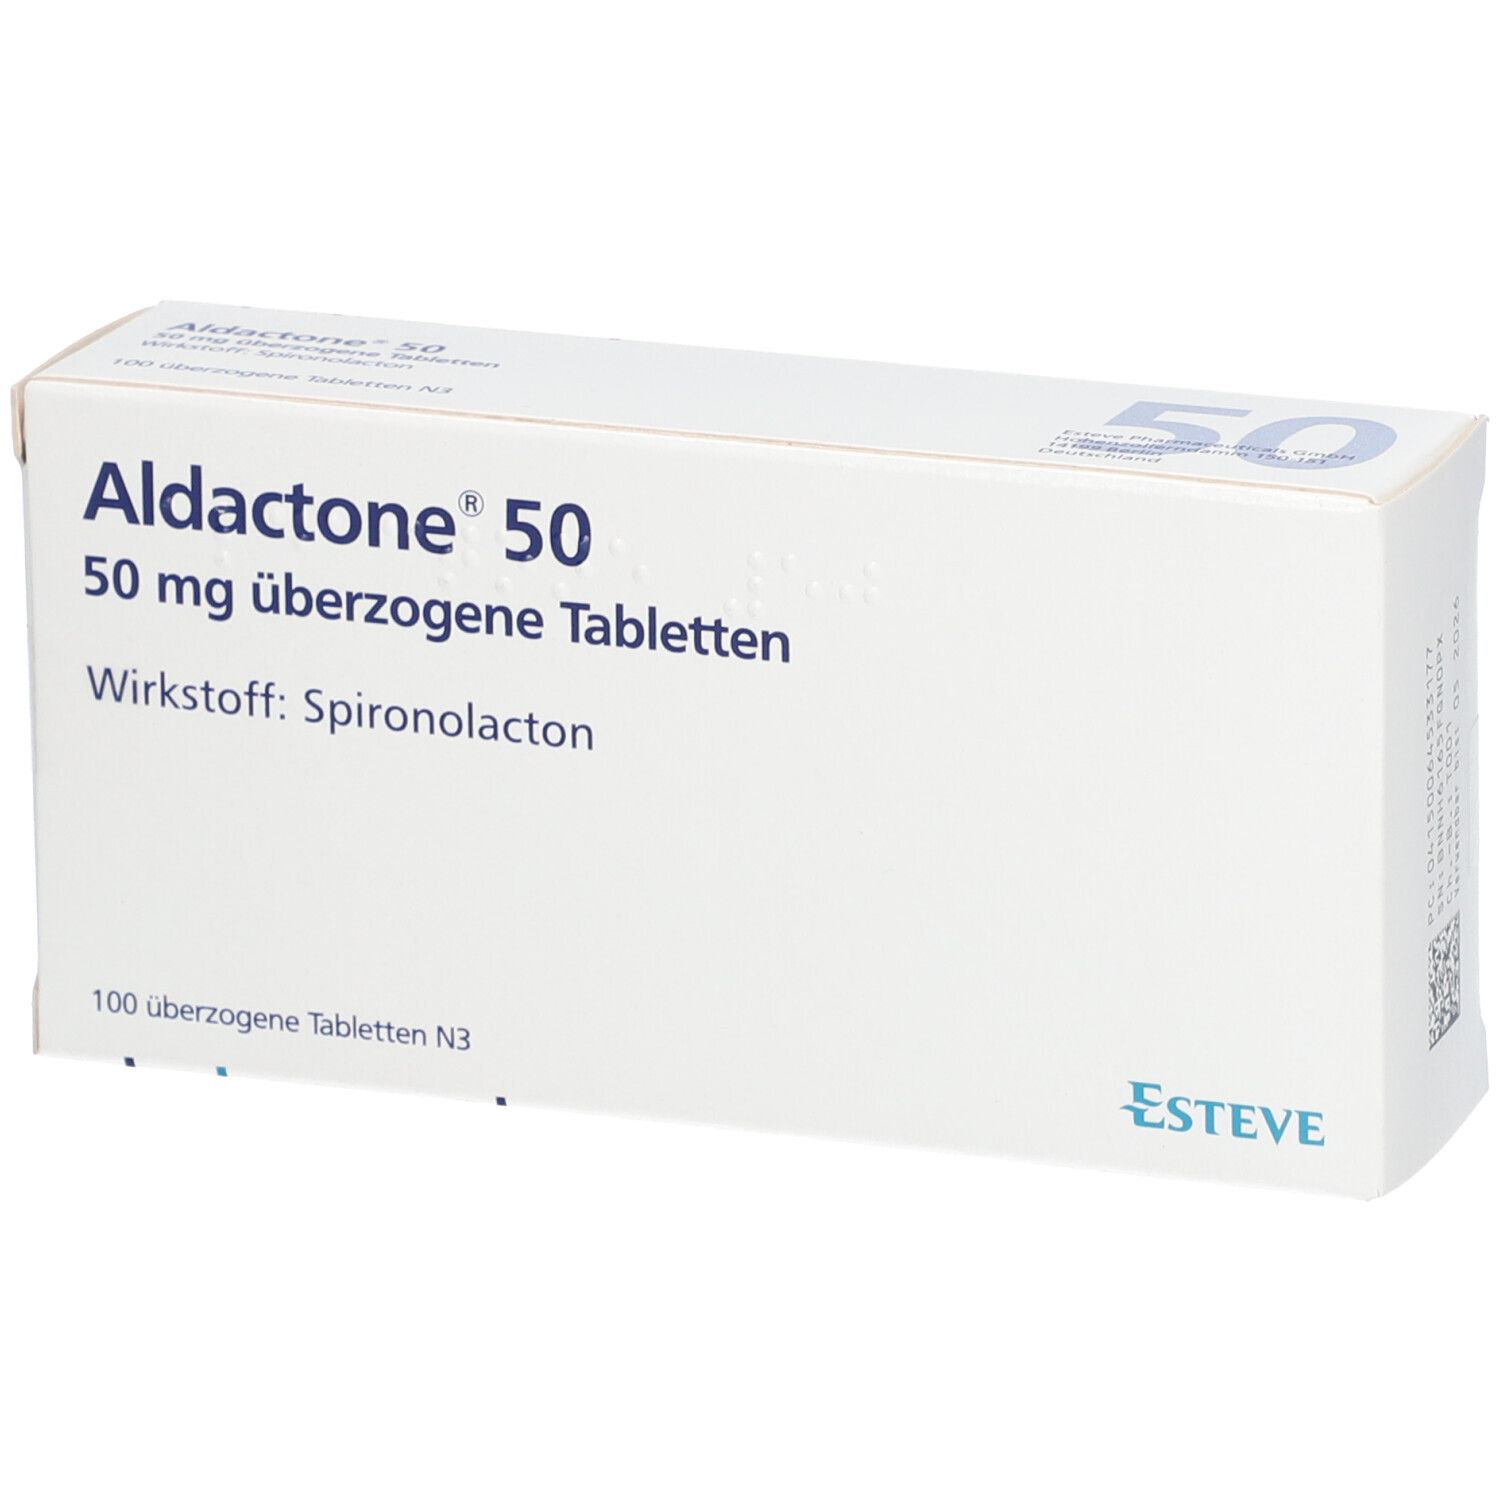 Aldactone® 50